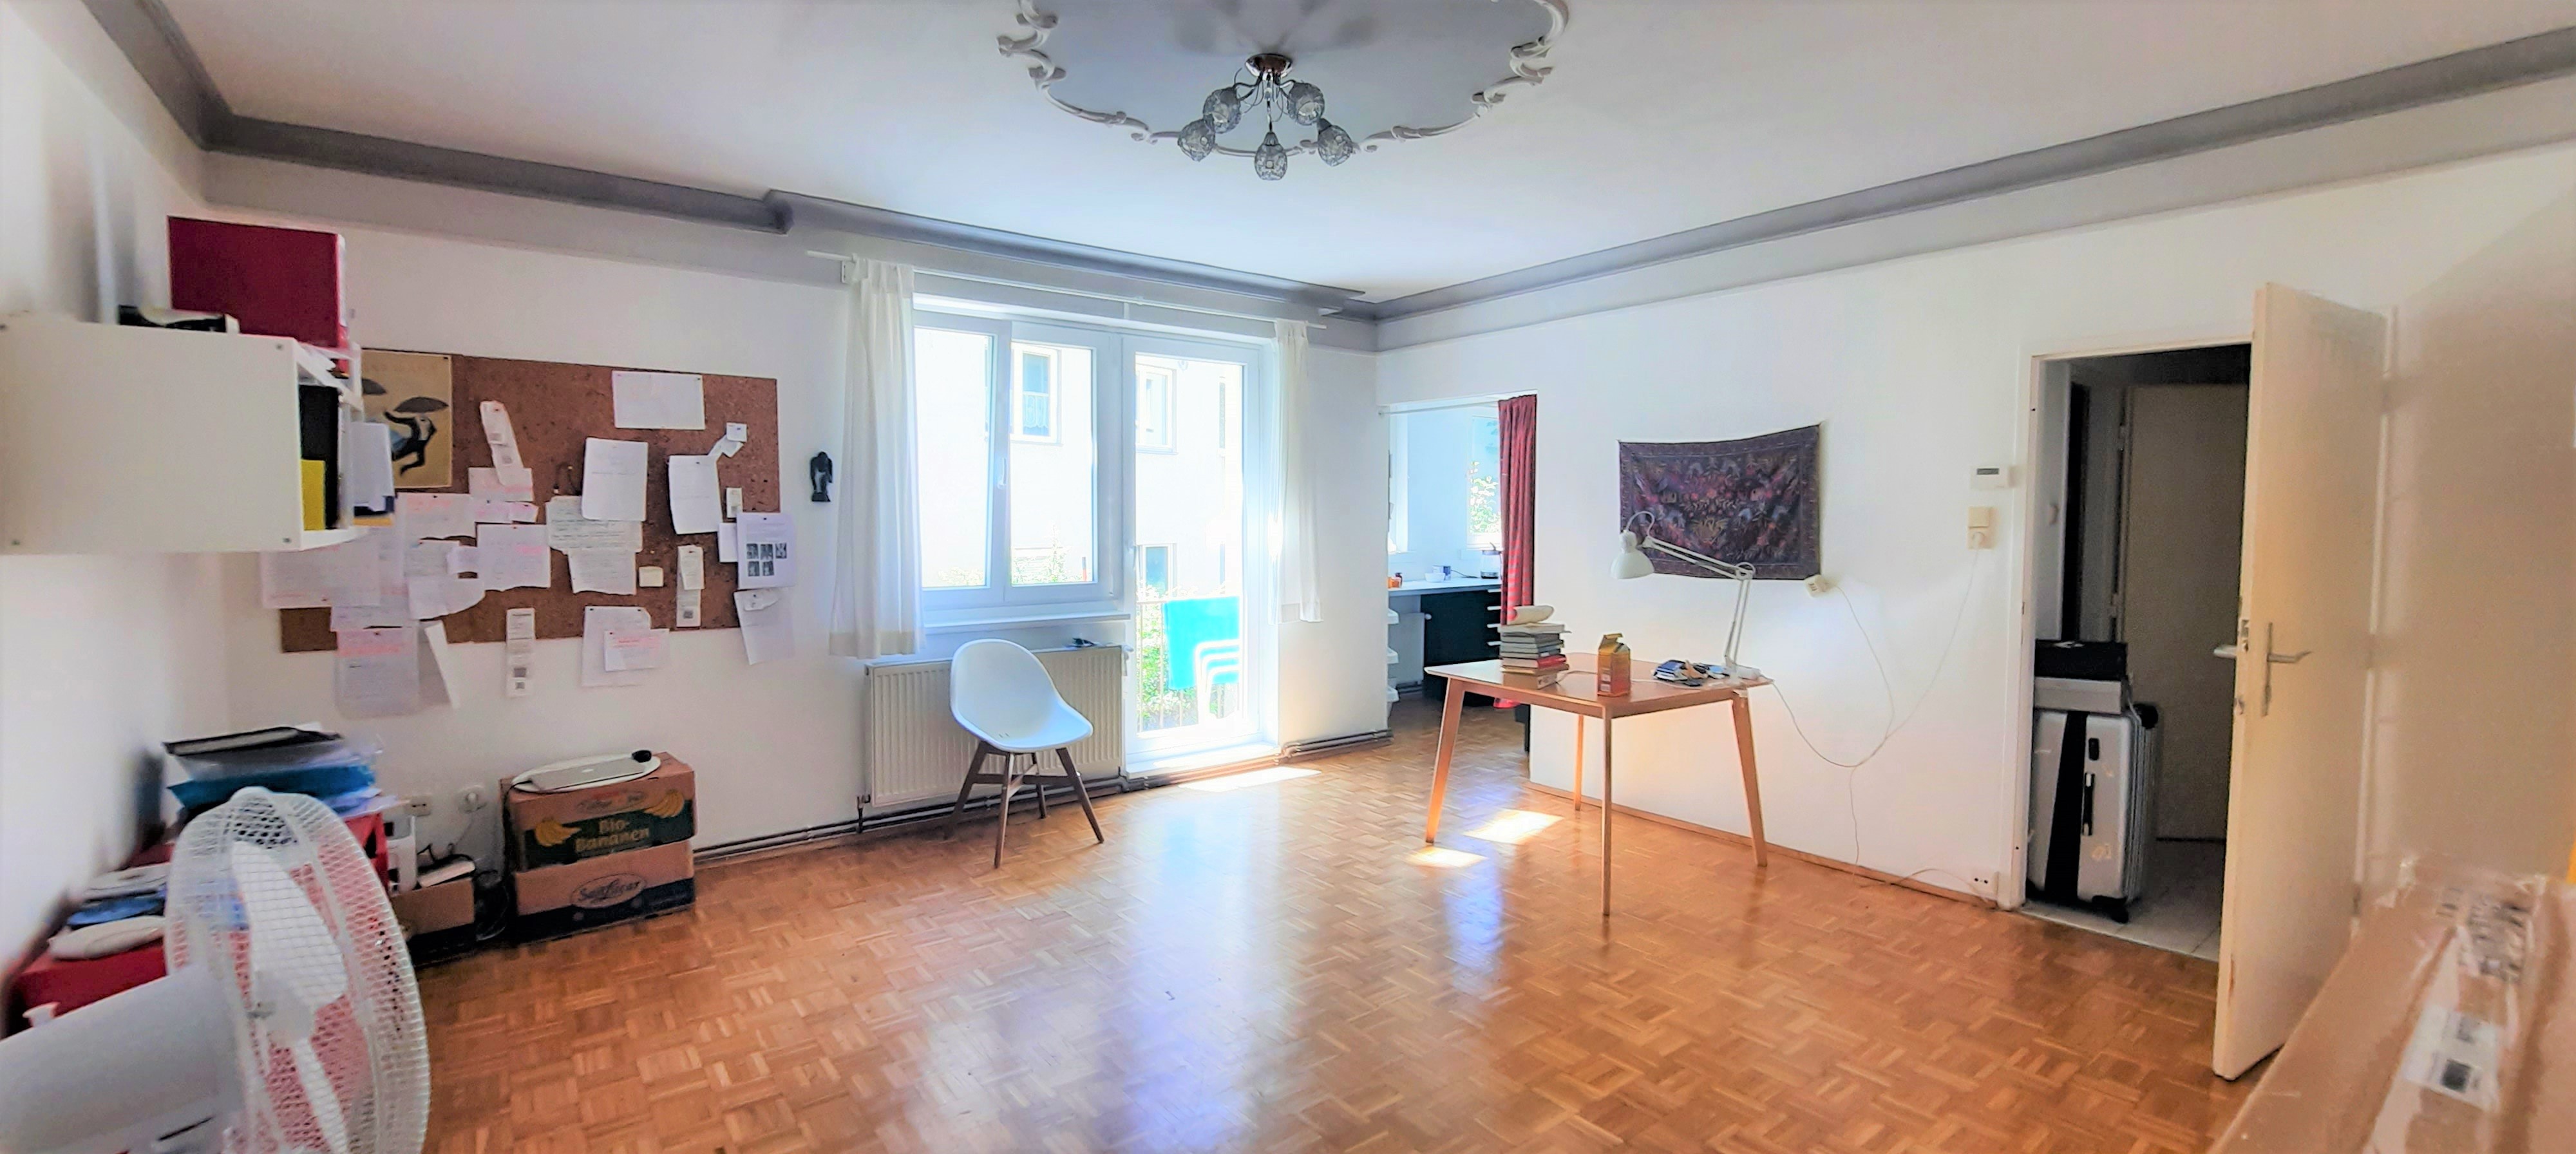 2 Wohnungen ( 41 m² und 59 m² nebeneinander in der Fasangartengasse) Objekt_208 Bild_1141